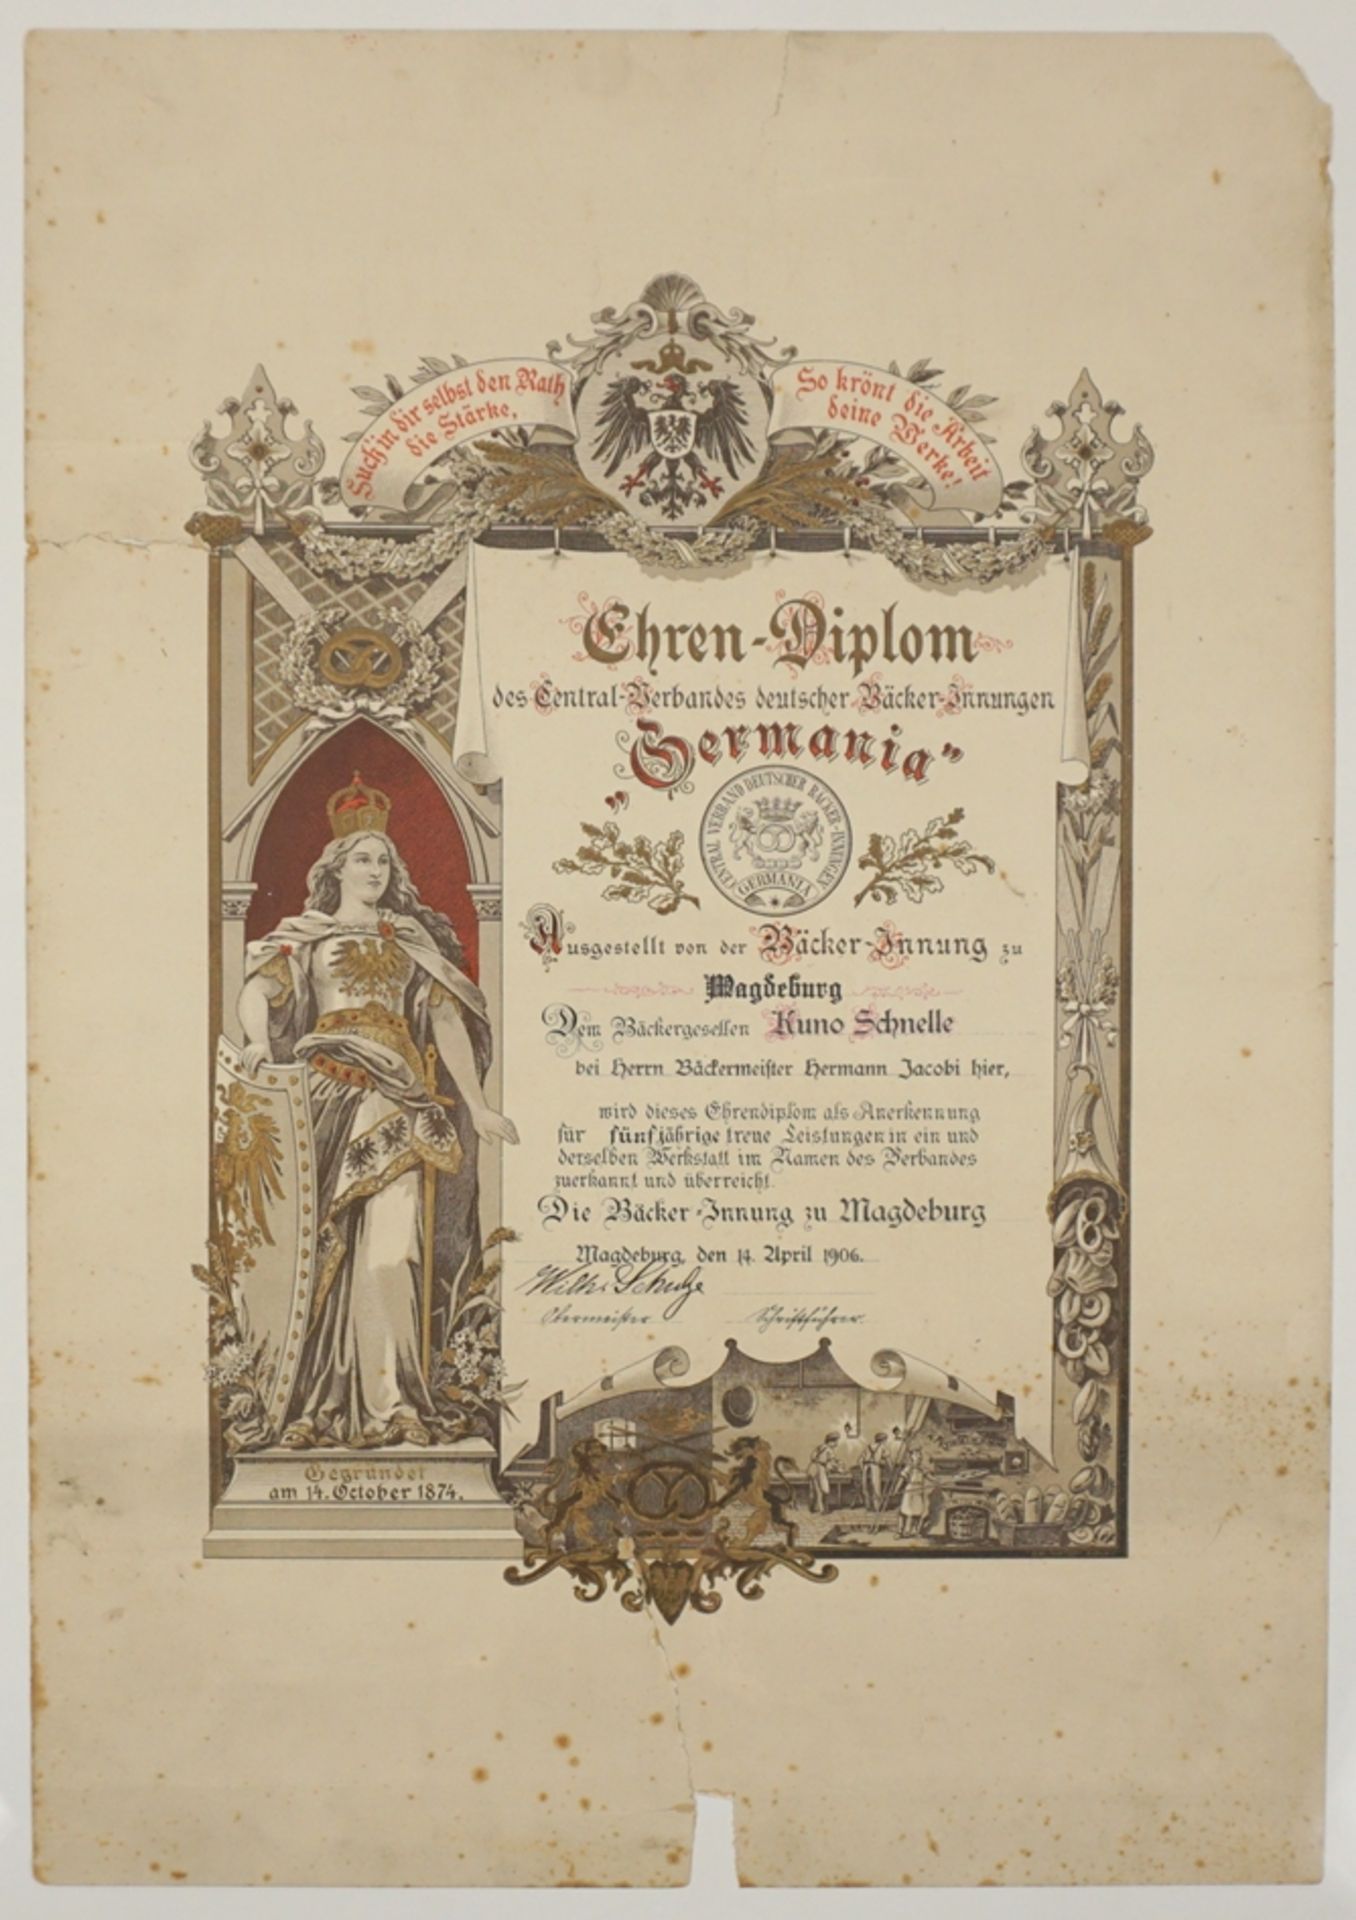 Ehrendiplom 1906 und Brief zum 25-jährigem Meisterjubiläum, 1934, Bäckerinnung zu Magdeburg - Image 2 of 2